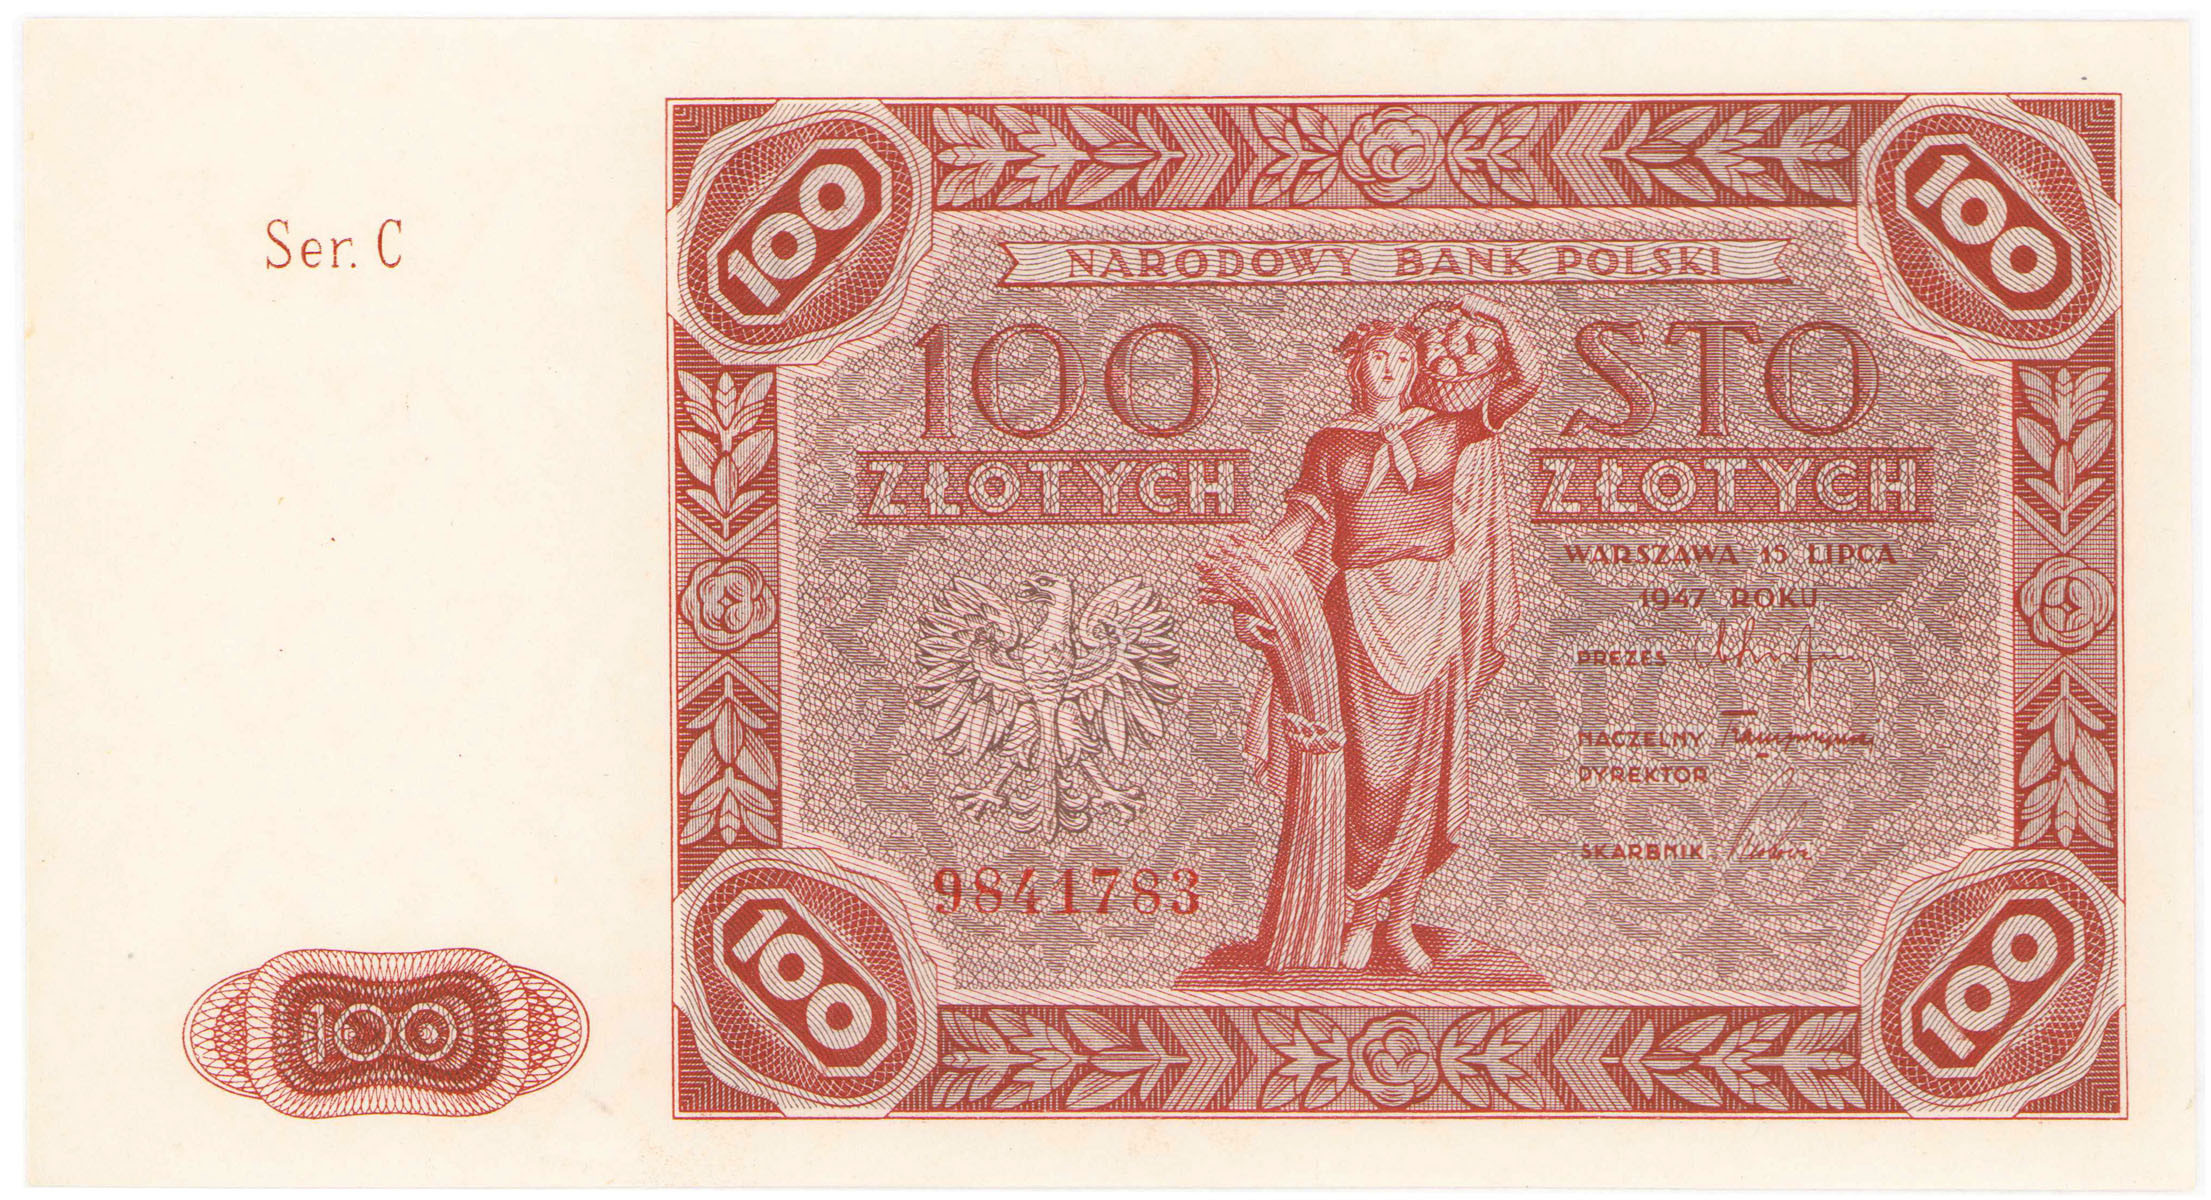 100 złotych 1947 seria C - RZADKI